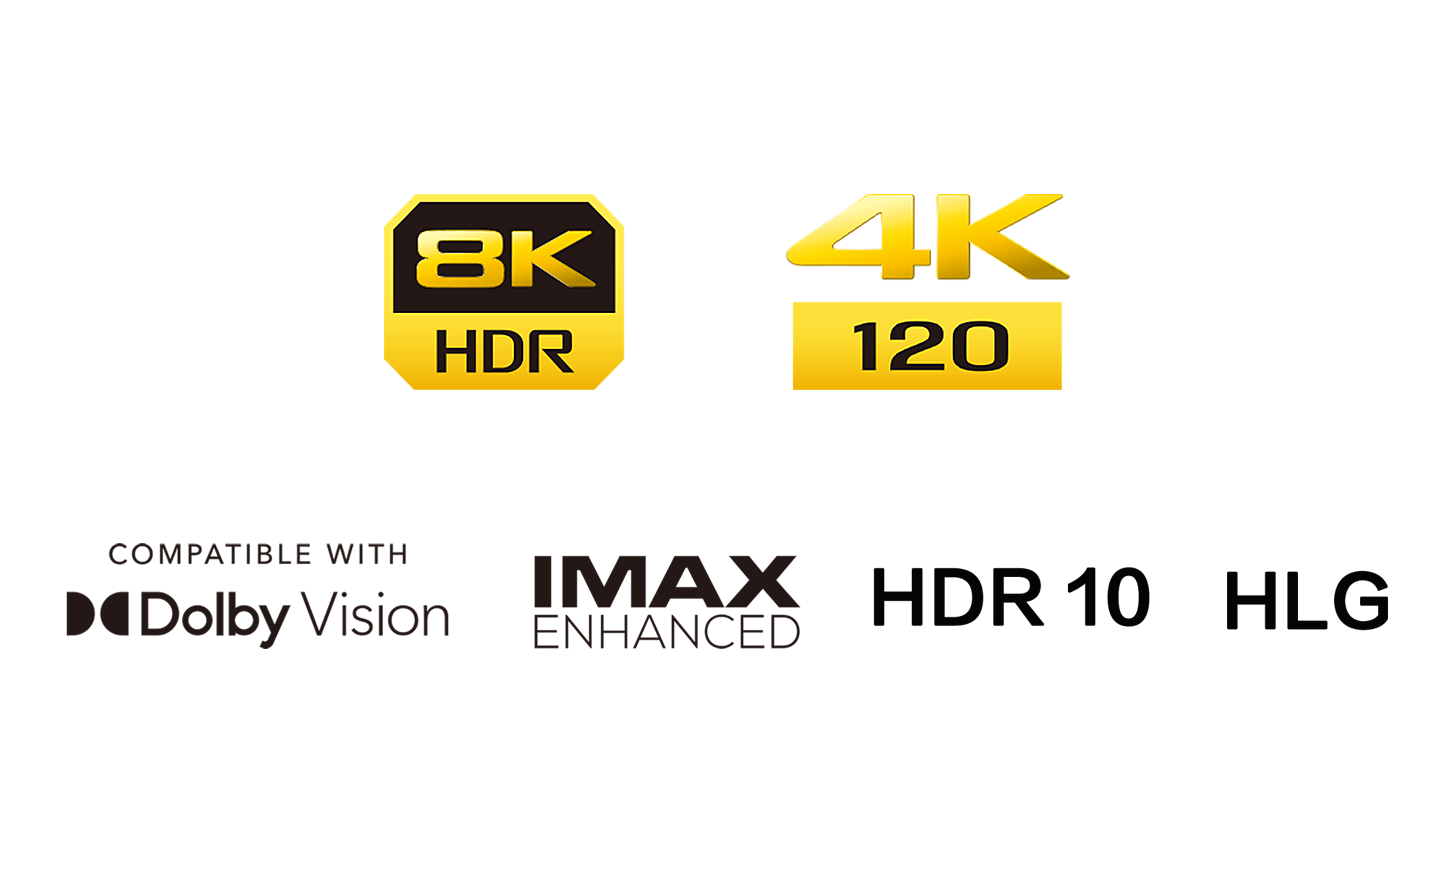 Λογότυπο 8K HDR, λογότυπο 4k 120, λογότυπο συμβατότητας με Dolby Vision, λογότυπο HDR 10, λογότυπο IMAX Enhanced, λογότυπο HLG